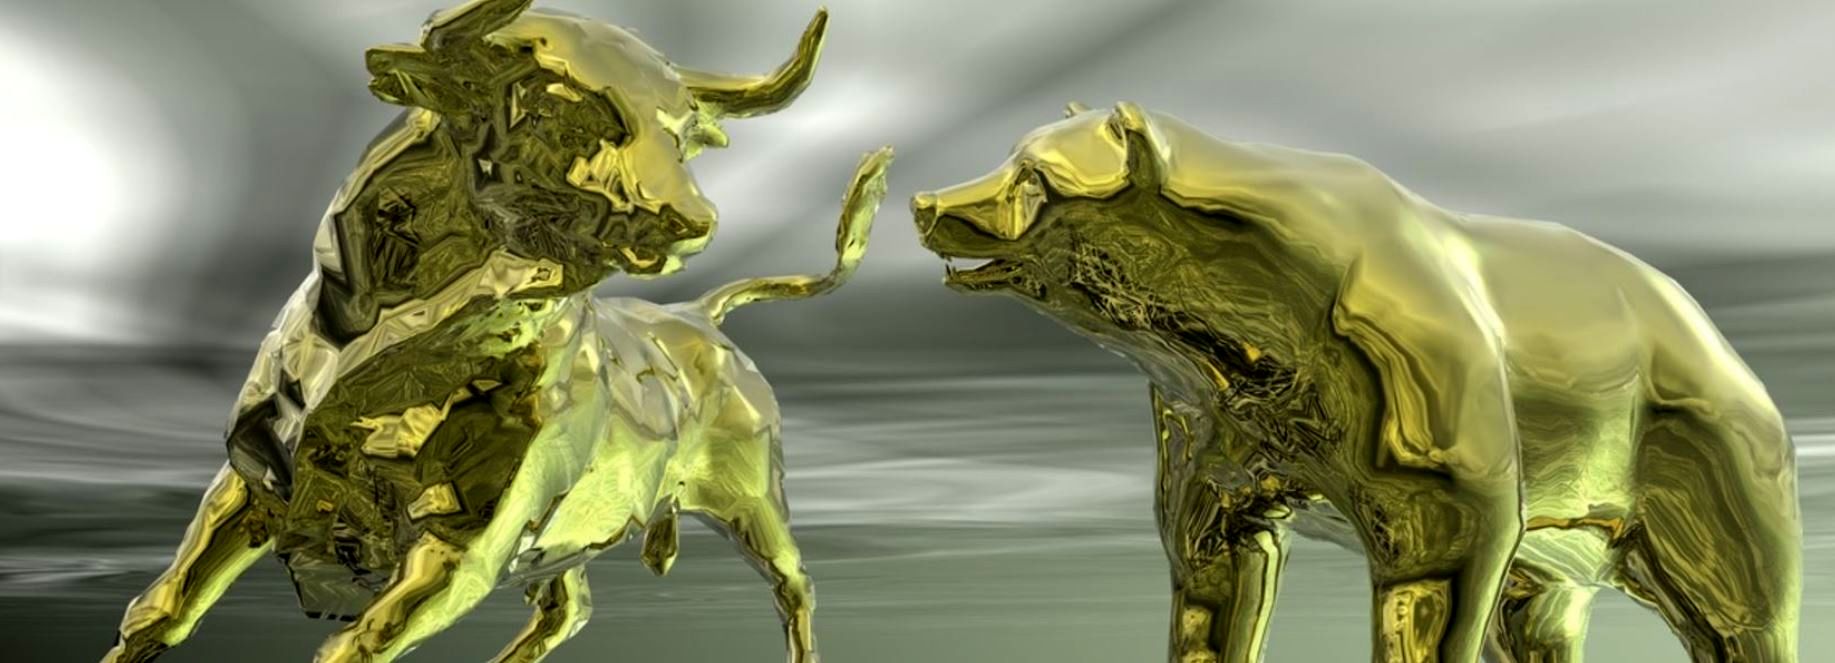 پیش بینی جدید از قیمت طلا؛ رصد سه خبر برای حدس قیمت طلا